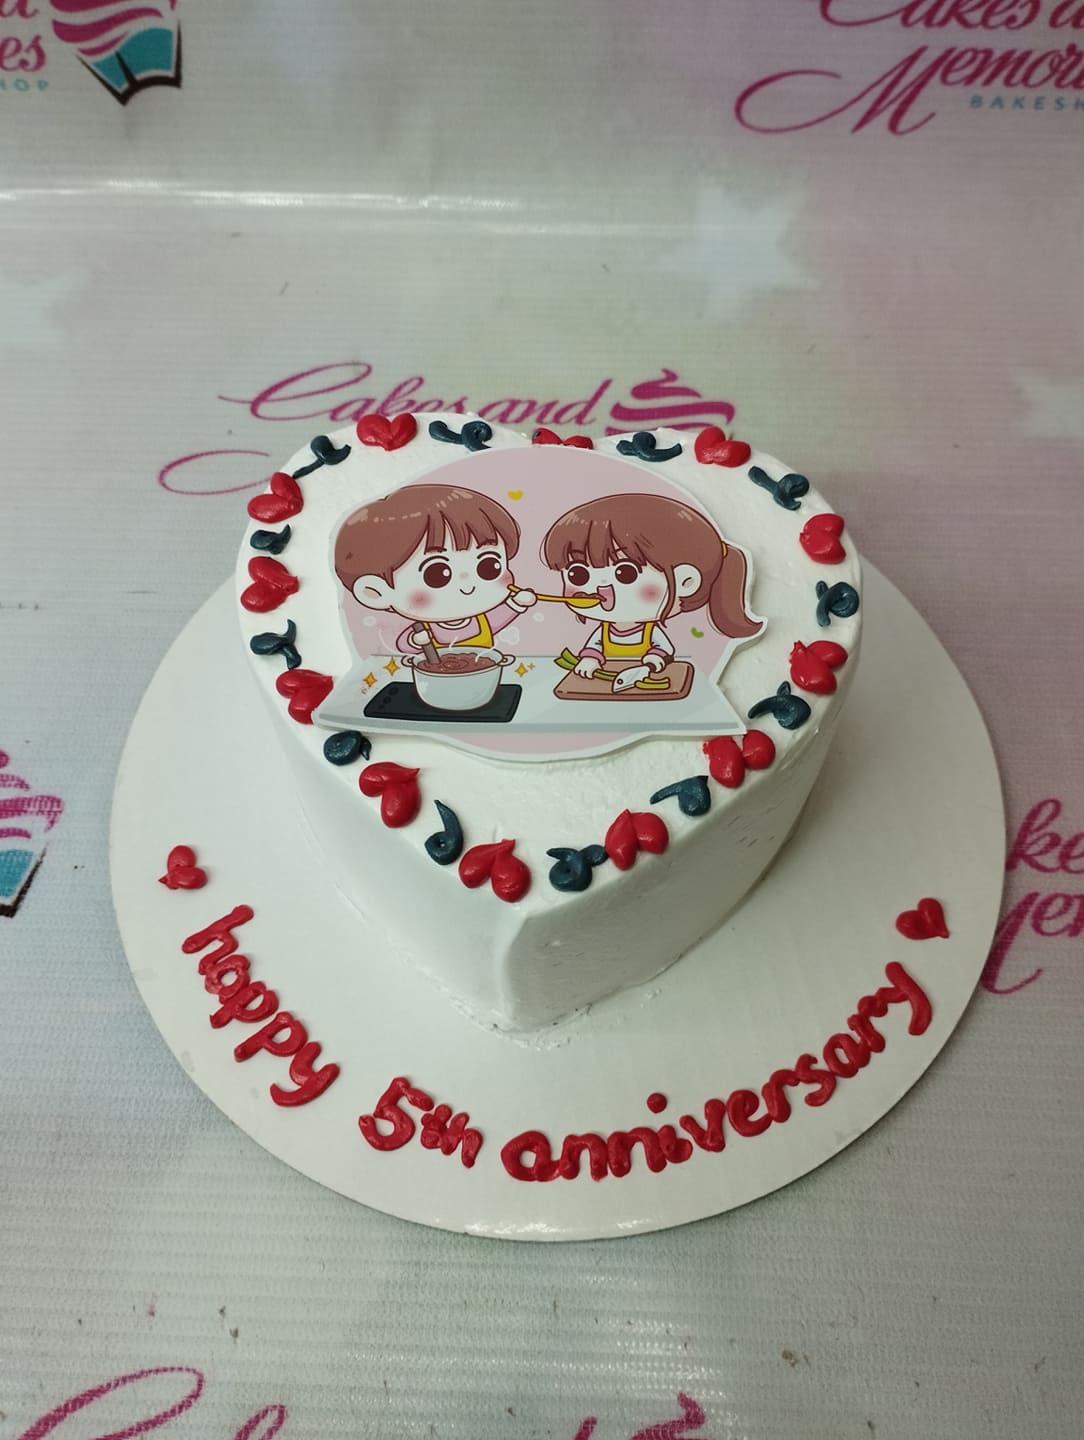 5th Anniversary Fondant Cake | Anniversary Cakes